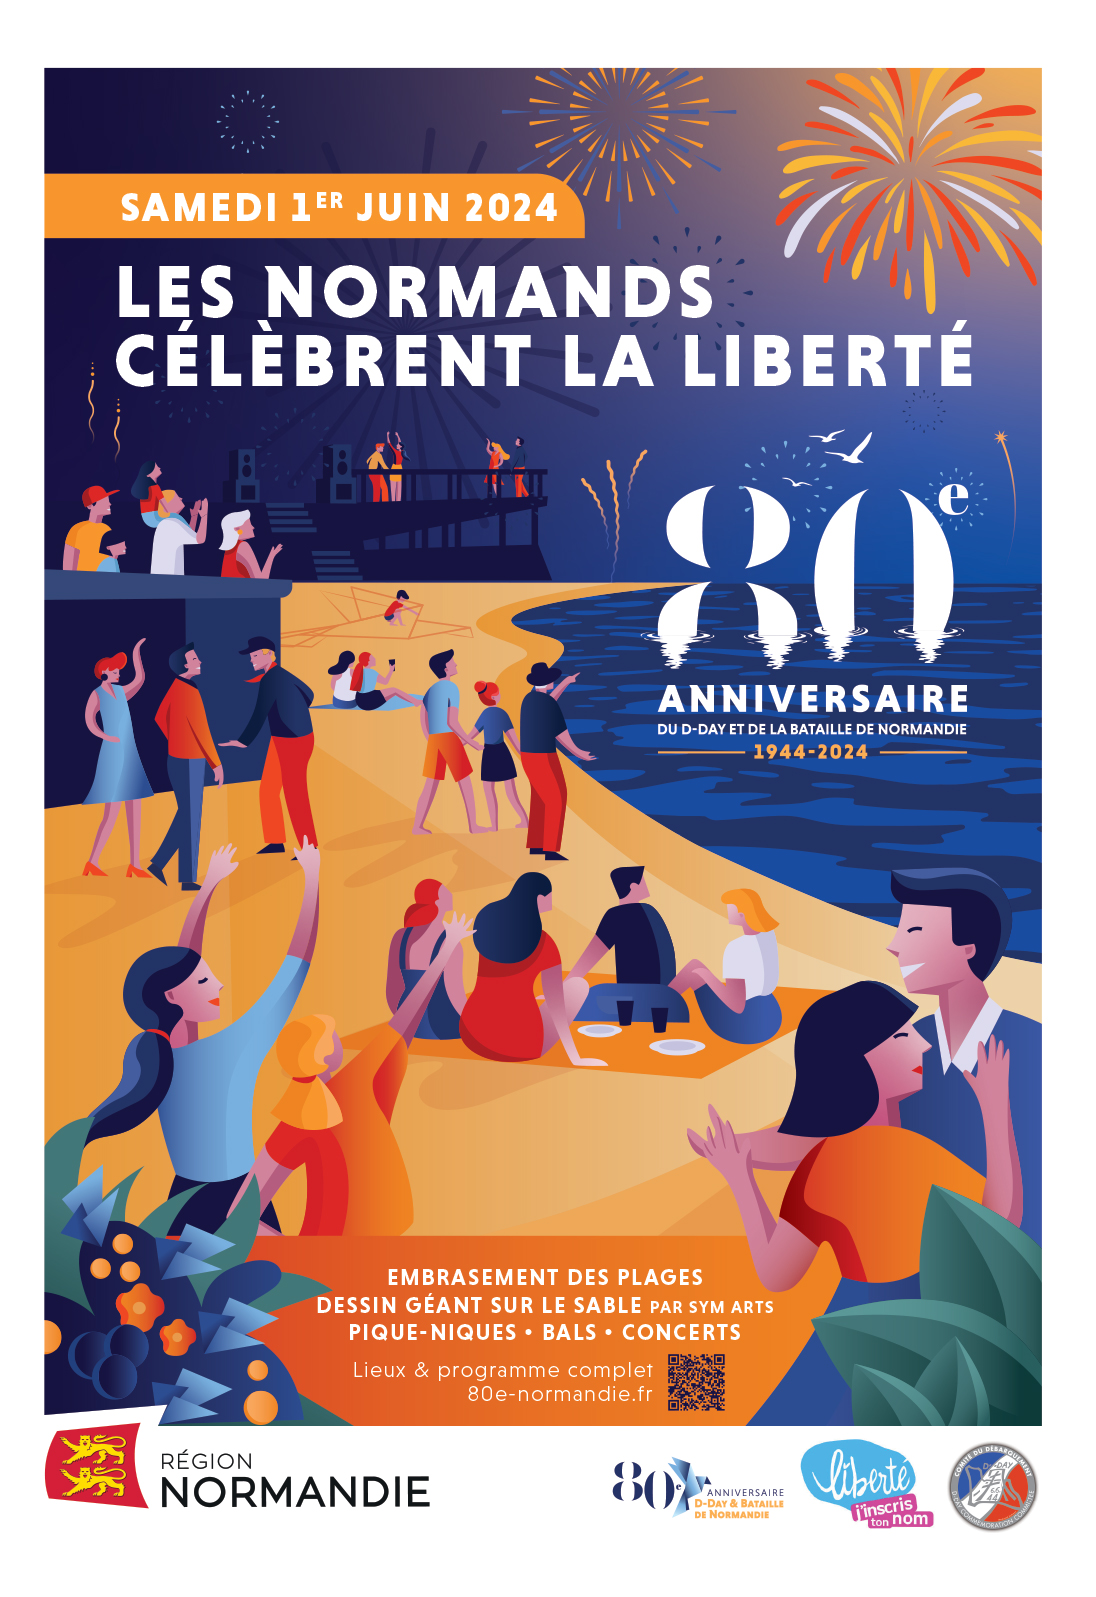 Les plages de Normandie s'embrasent ce samedi 1er juin pour le 80ᵉ anniversaire du Débarquement